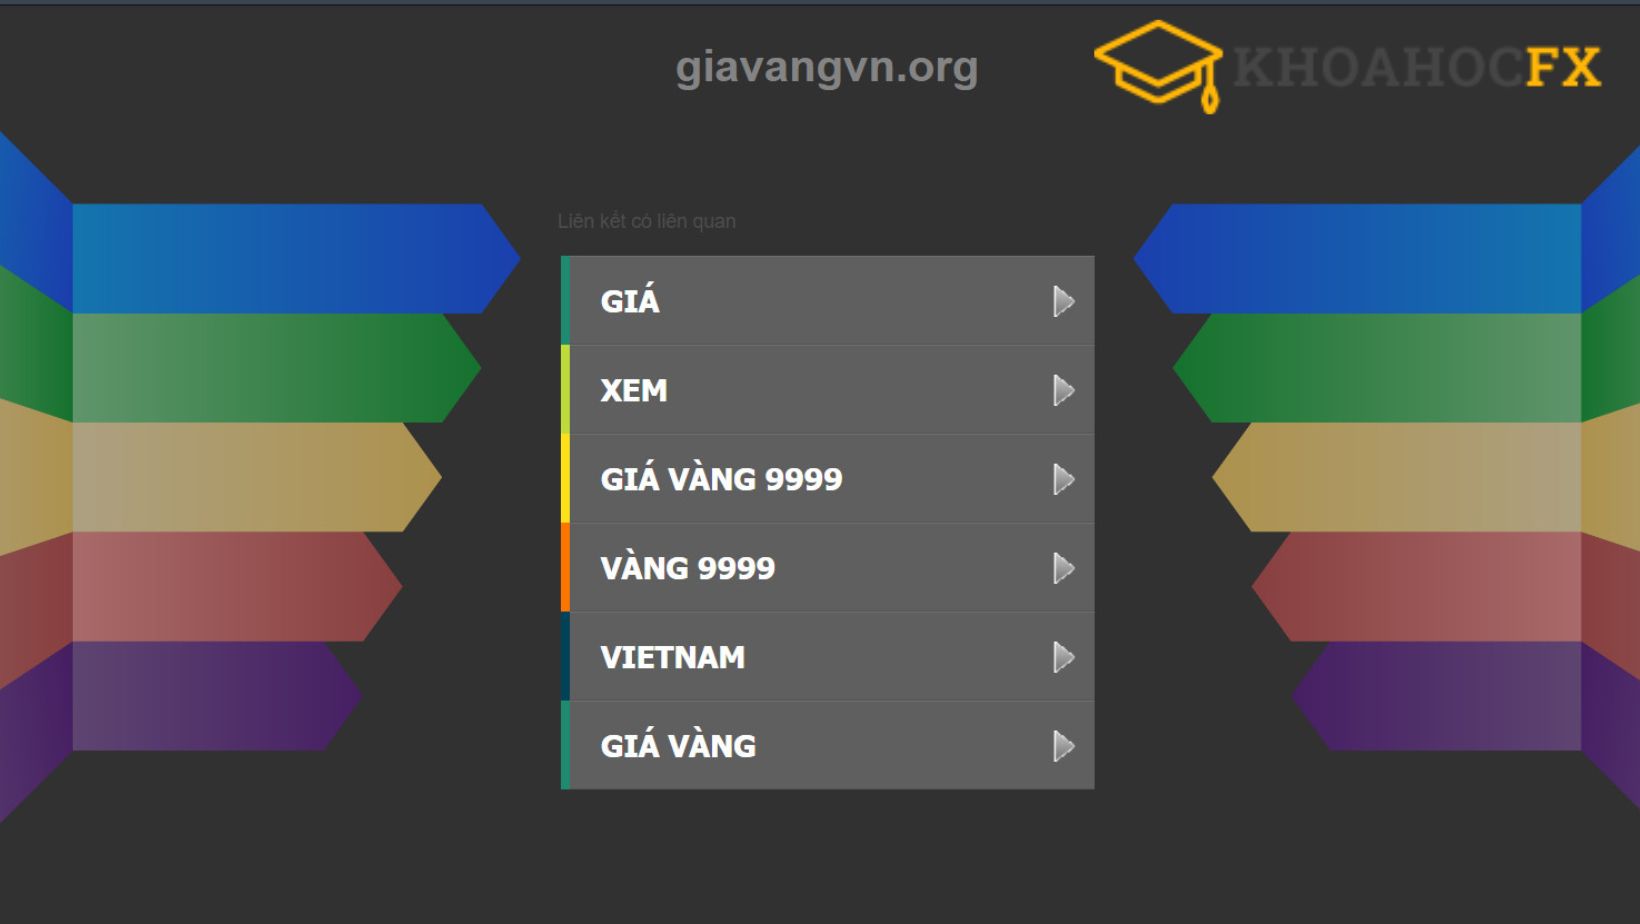 Giavangvn.org có giao diện thân thiện, dễ nhìn và dễ thao tác